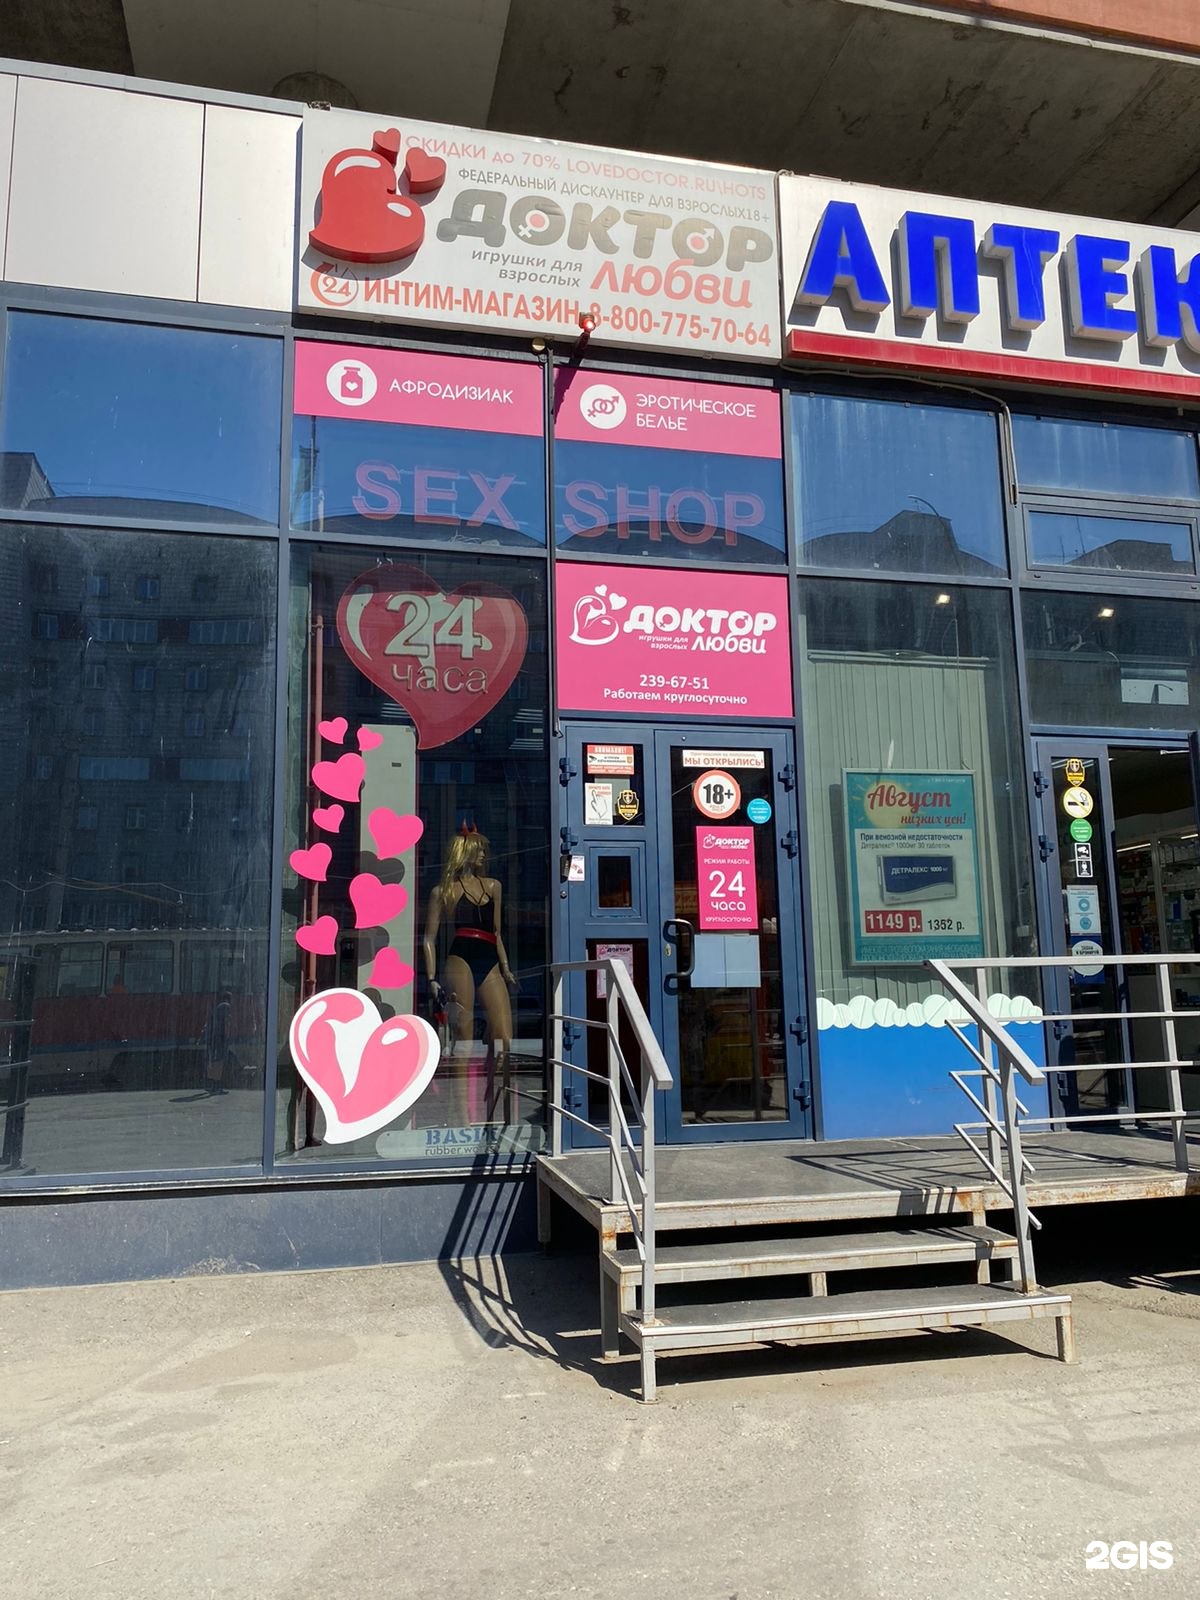 SEX SHOP FOR YOU в Новосибирске | Интим-магазин для взрослых | Секс-шоп онлайн с доставкой!